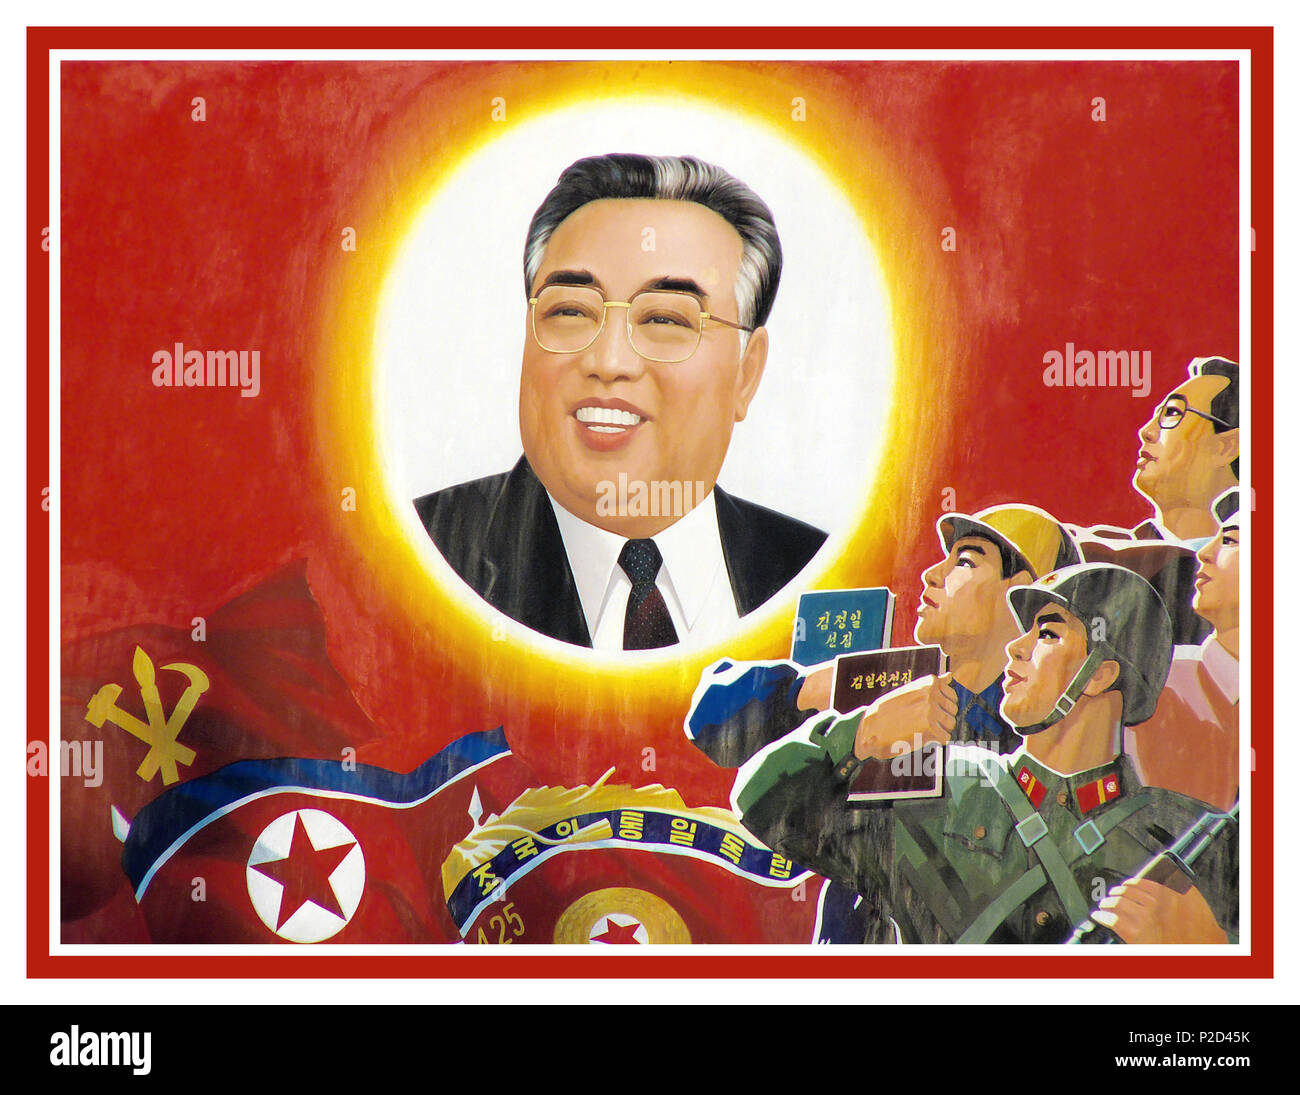 Affiche de propagande vintage des années 1960, Kim Il-sung en Corée du Nord, officiellement la République populaire démocratique de Corée dans la "République populaire démocratique de Corée (RPDC)", Kim Il-sung a construit un culte de la personnalité, une dictature totalitaire communiste établi en vertu d'une idéologie appelée "Juche" Banque D'Images